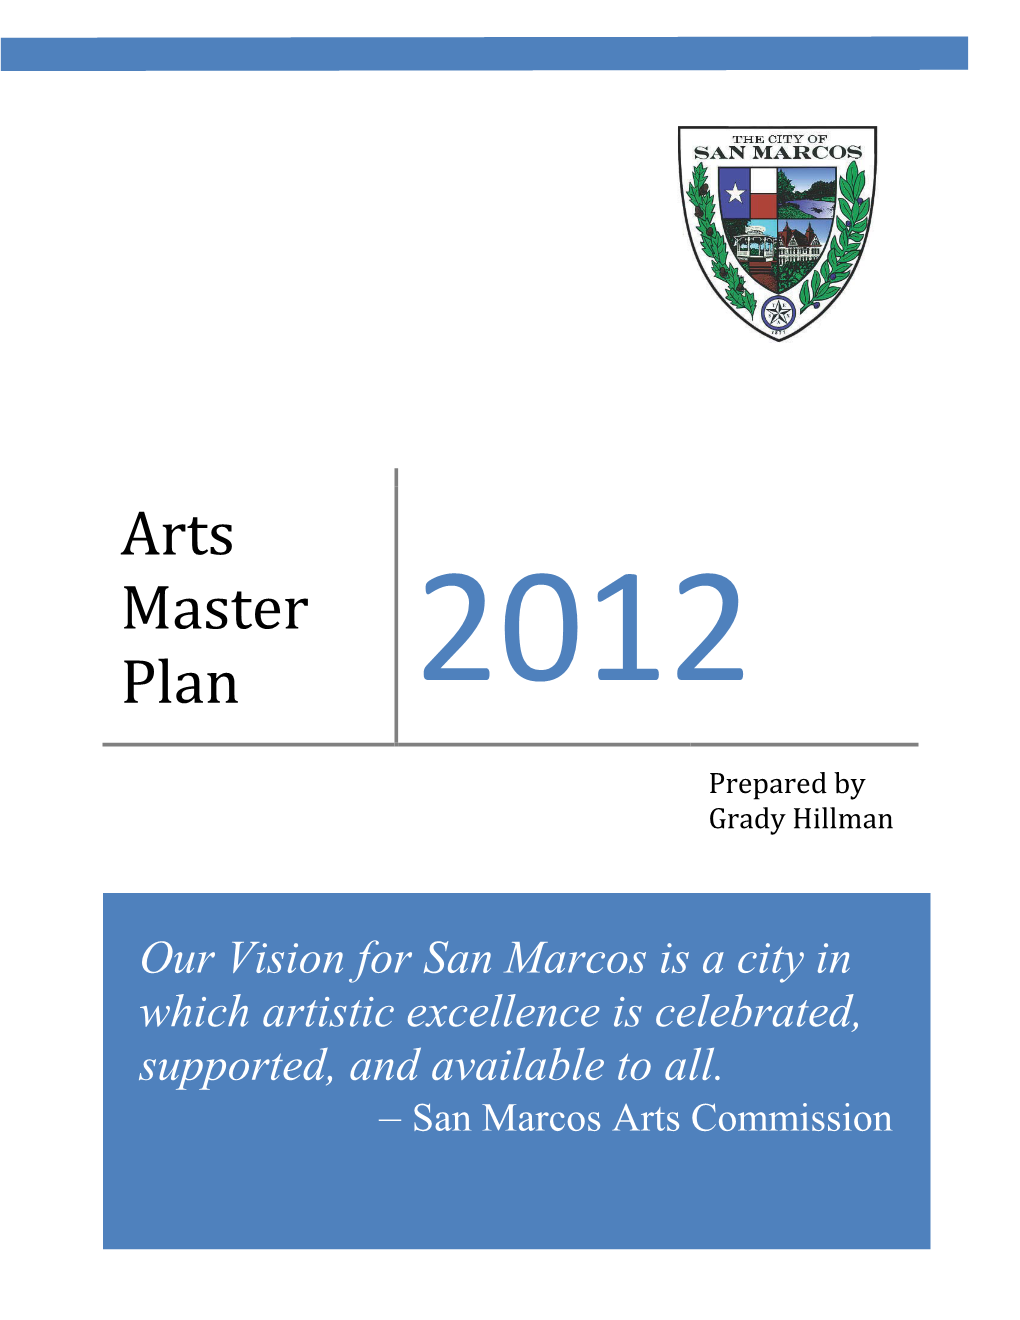 Arts Master Plan 2012